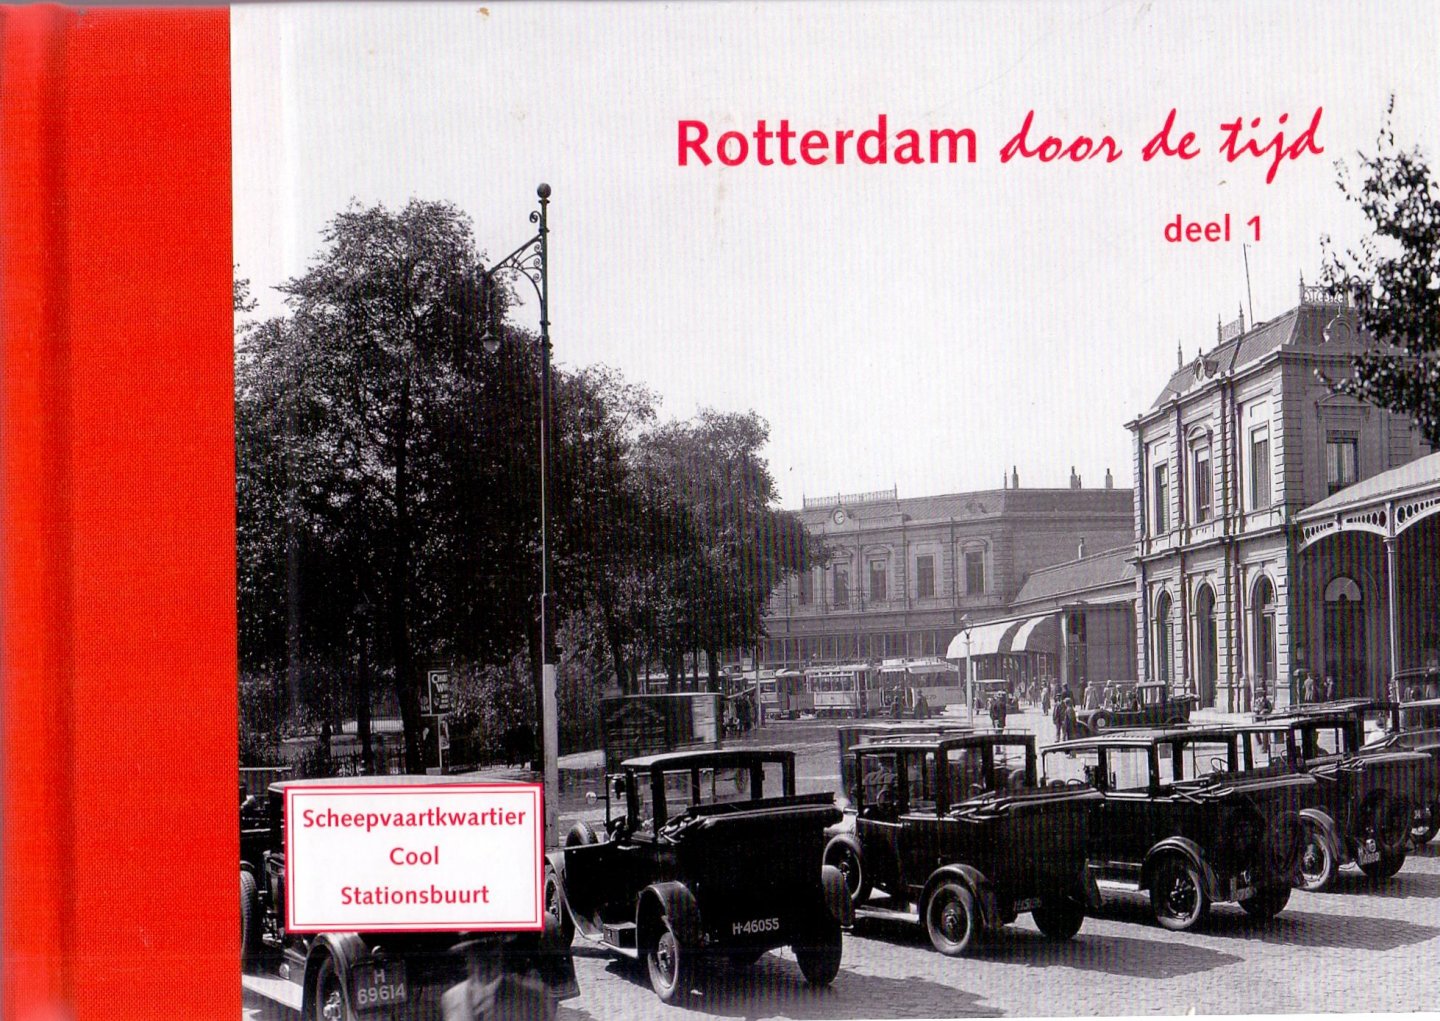 Klaassen, H.J.S. & Voet, H.A. (ds1382) - Rotterdam door de tijd. Deel 1. Scheepvaartkwartier, Cool en Stationsbuurt